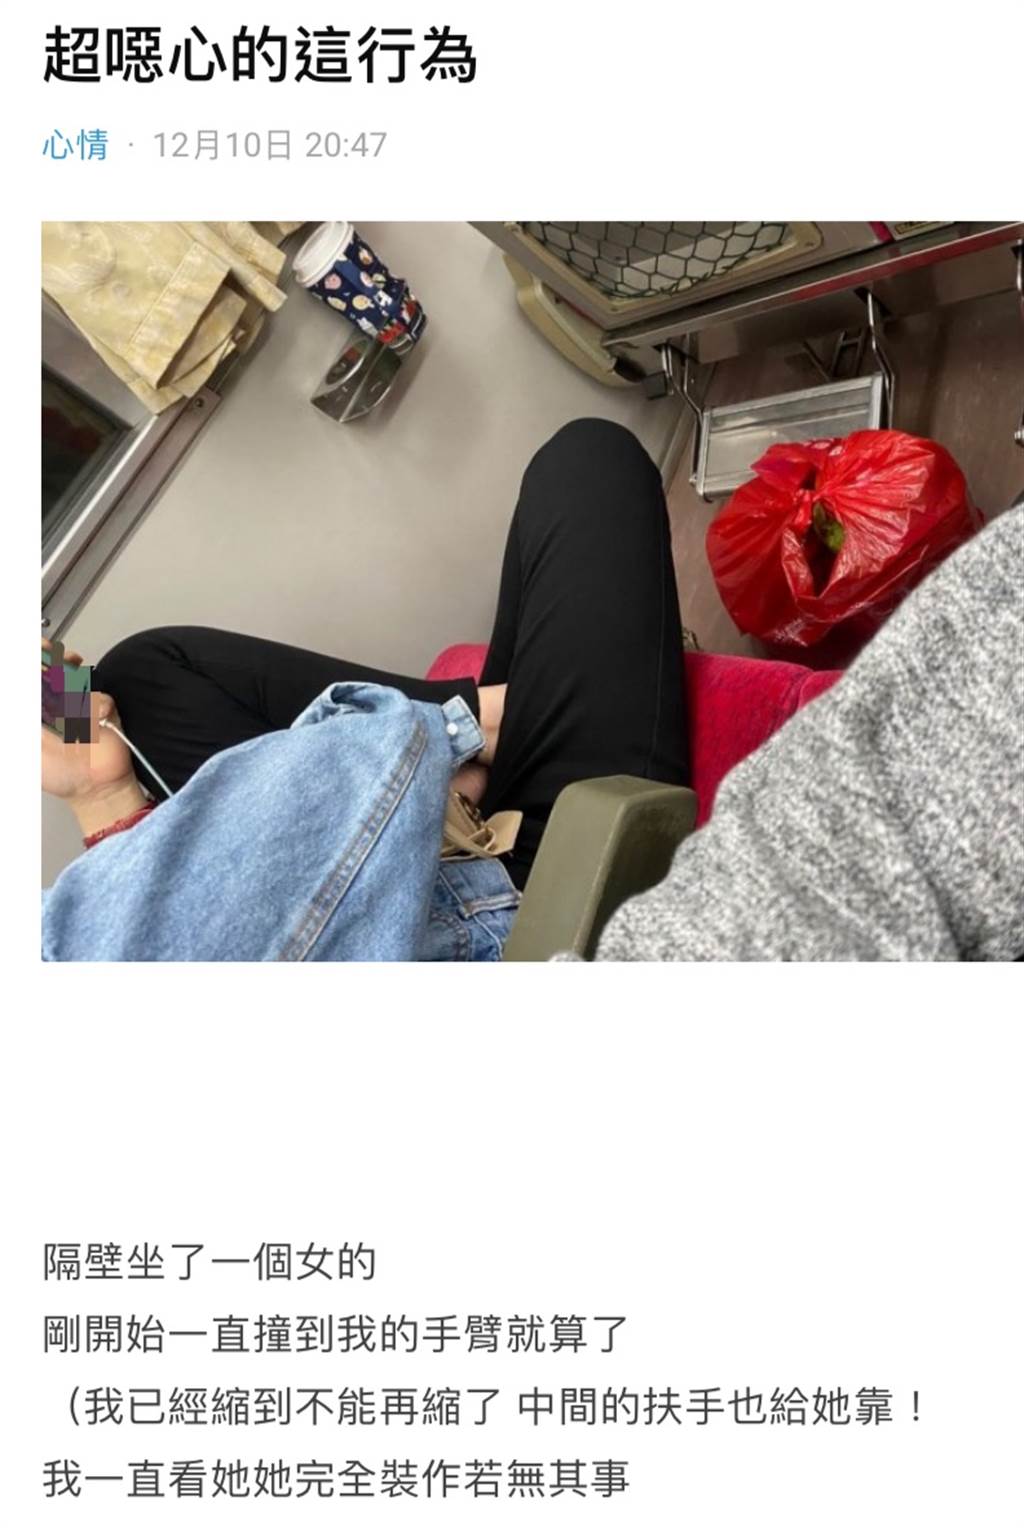 原PO貼出照片，從中可見該名乘客脫下鞋子，盤腿坐在位置上。(圖擷取自Dcard)